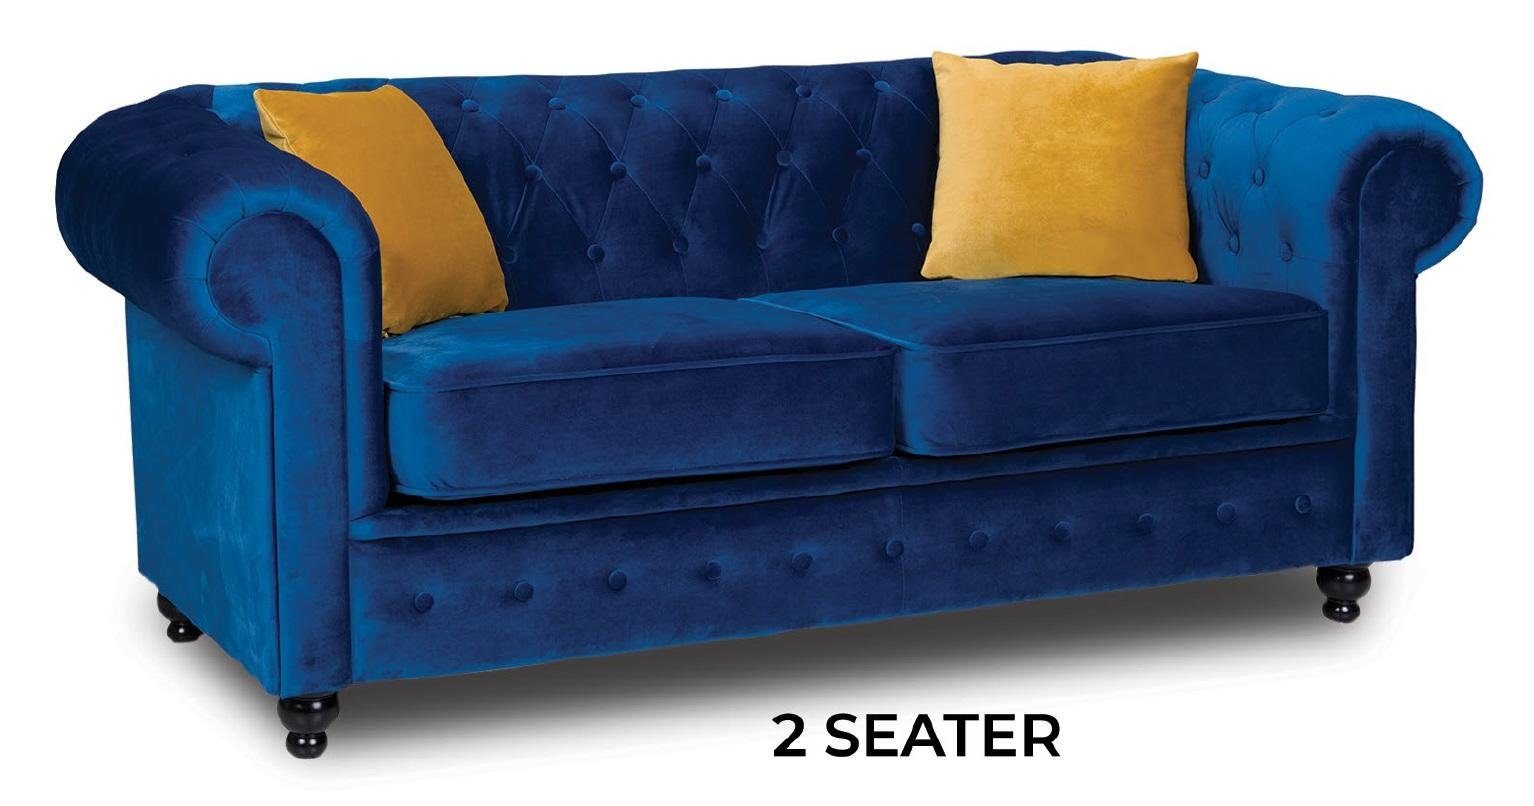 JVmoebel Sofa Blaues Wohnzimmer Chesterfield Sofa Zweisitzer Polstercouch Modern, Made in Europe